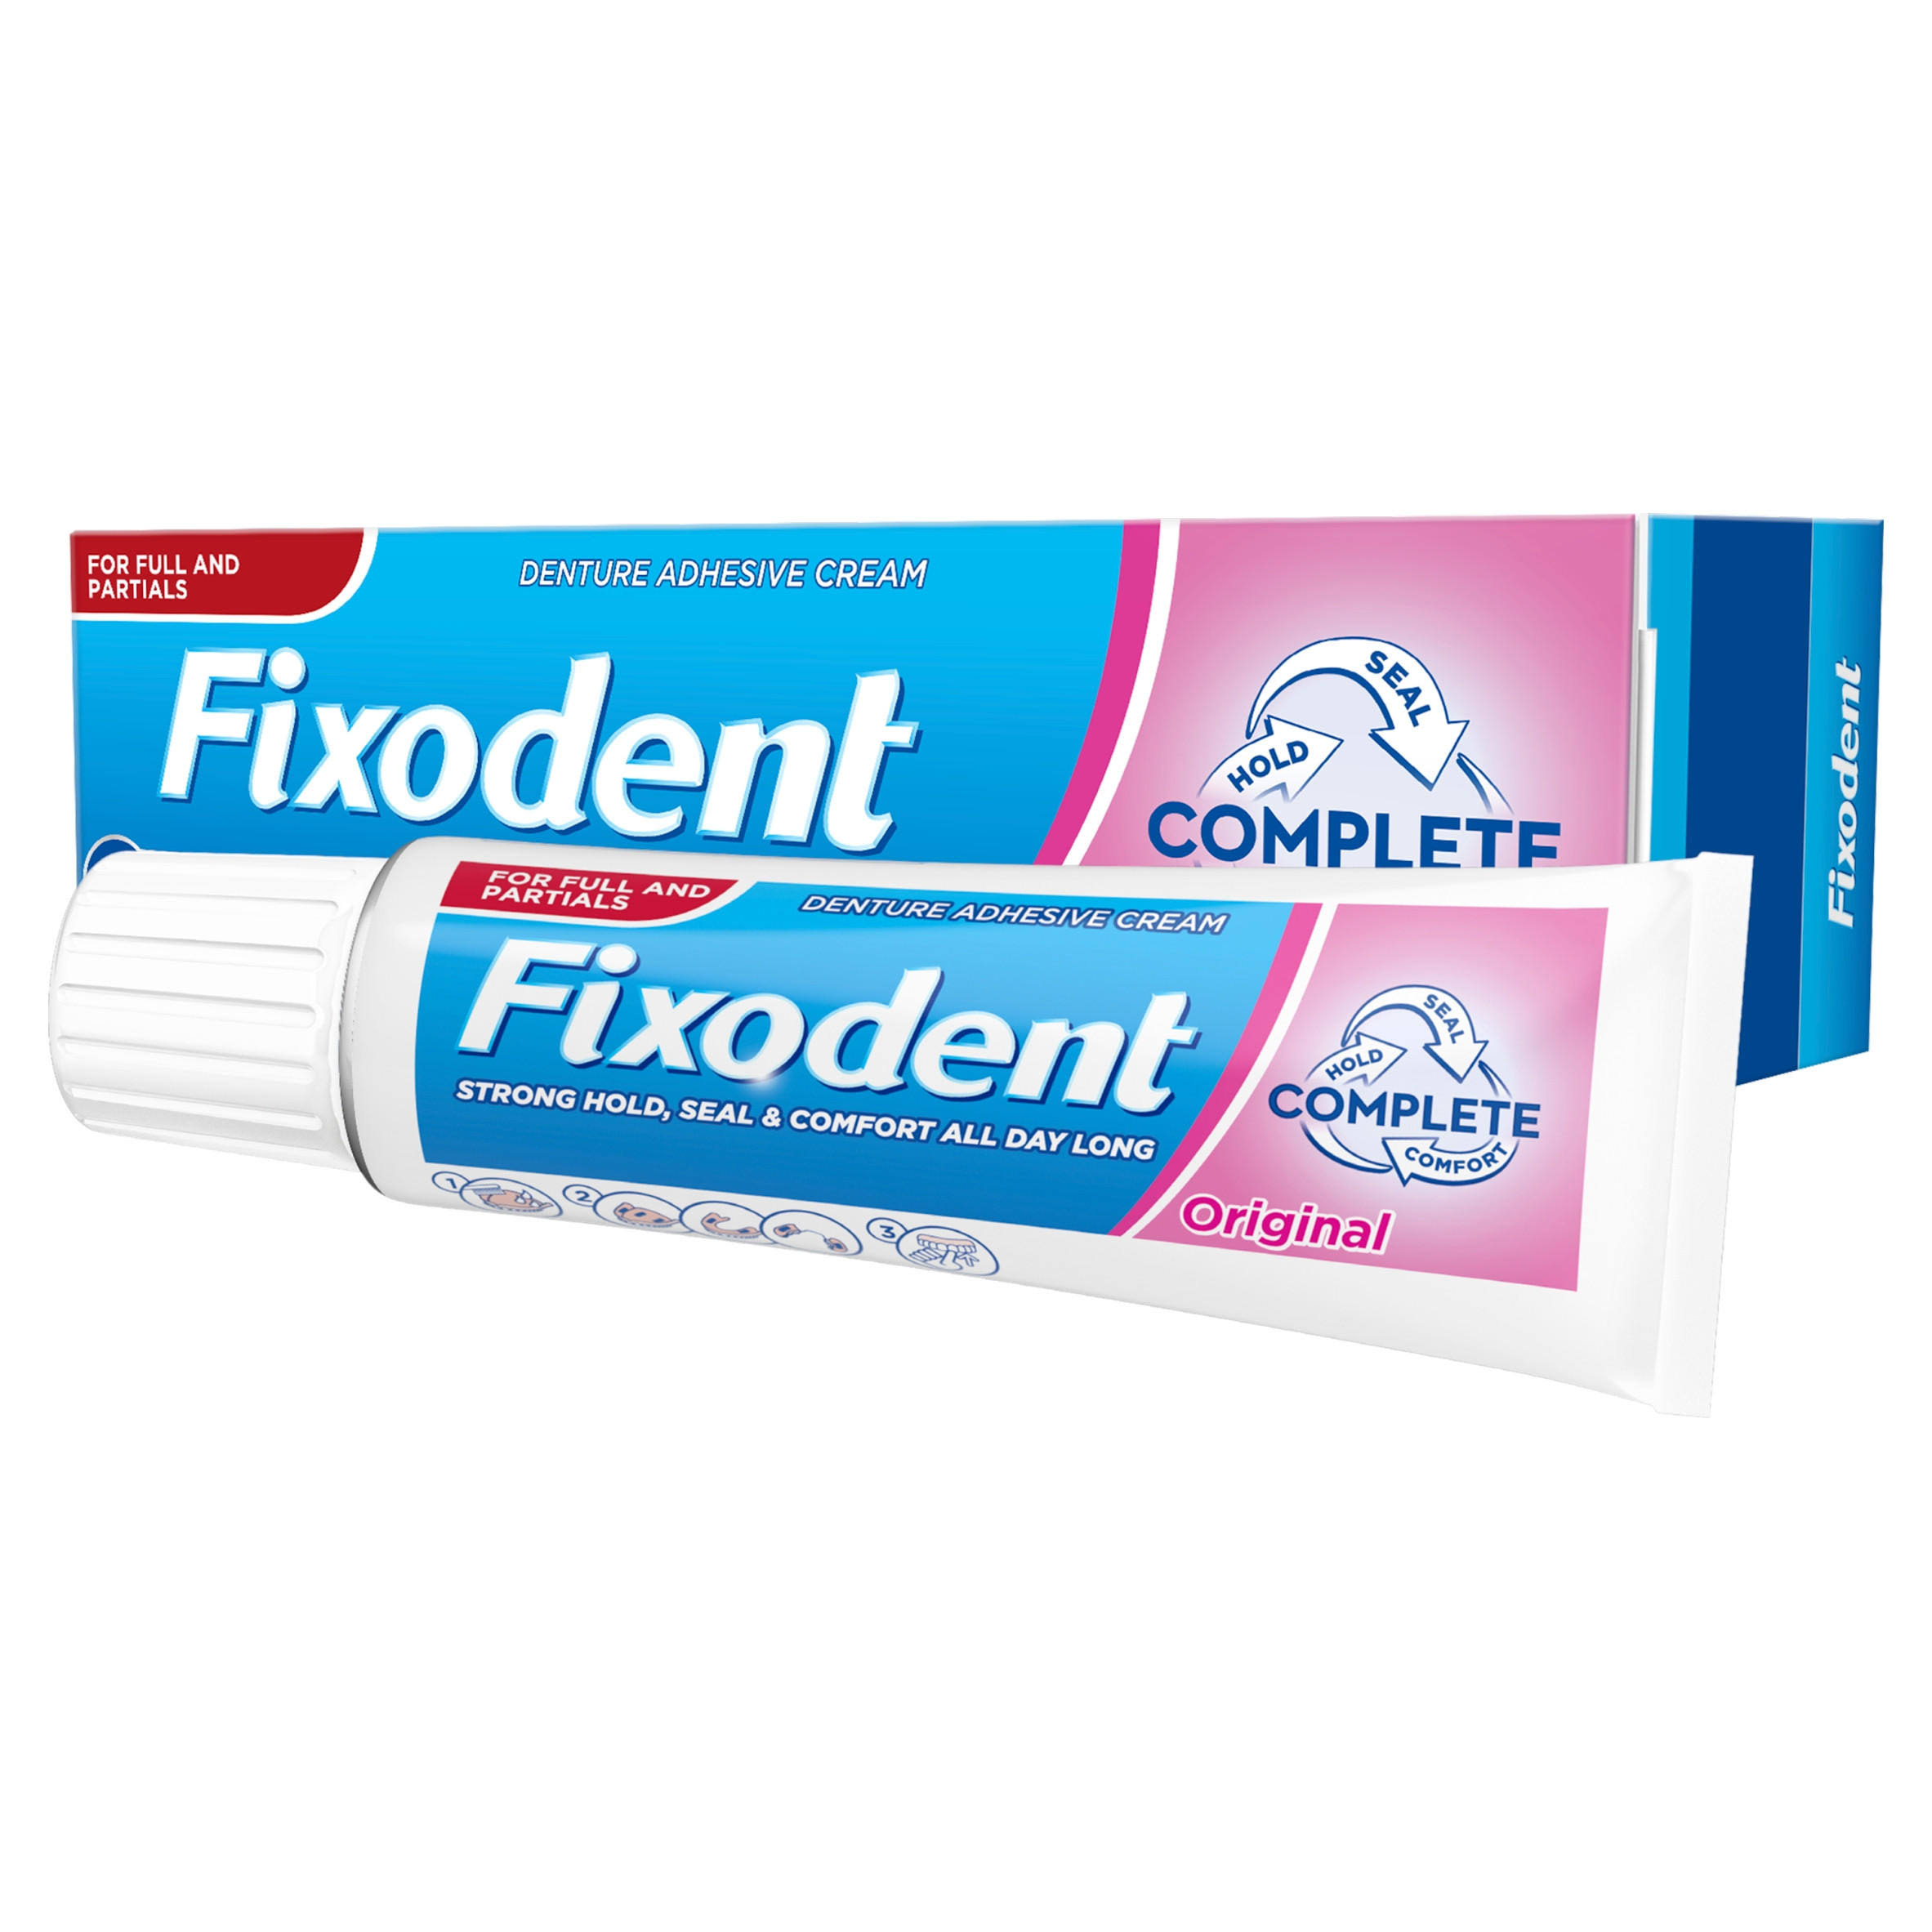 Fixodent Complete Original Denture Adhesive Cream - 40g